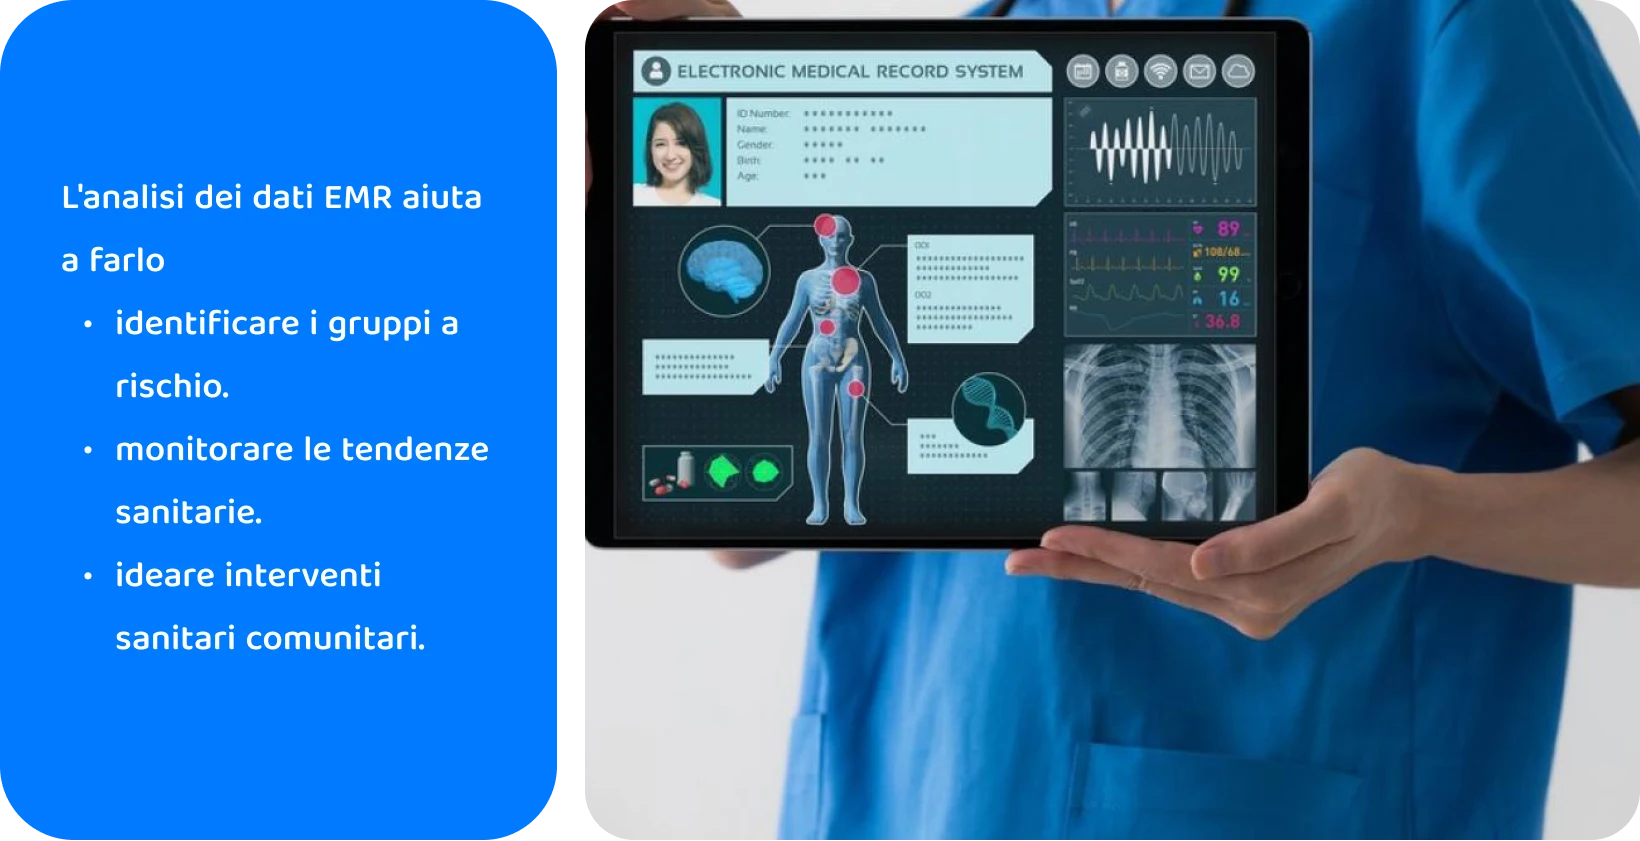 Professionista medico che utilizza un tablet con un sistema di cartelle cliniche elettroniche per analizzare i dati sanitari dei pazienti.